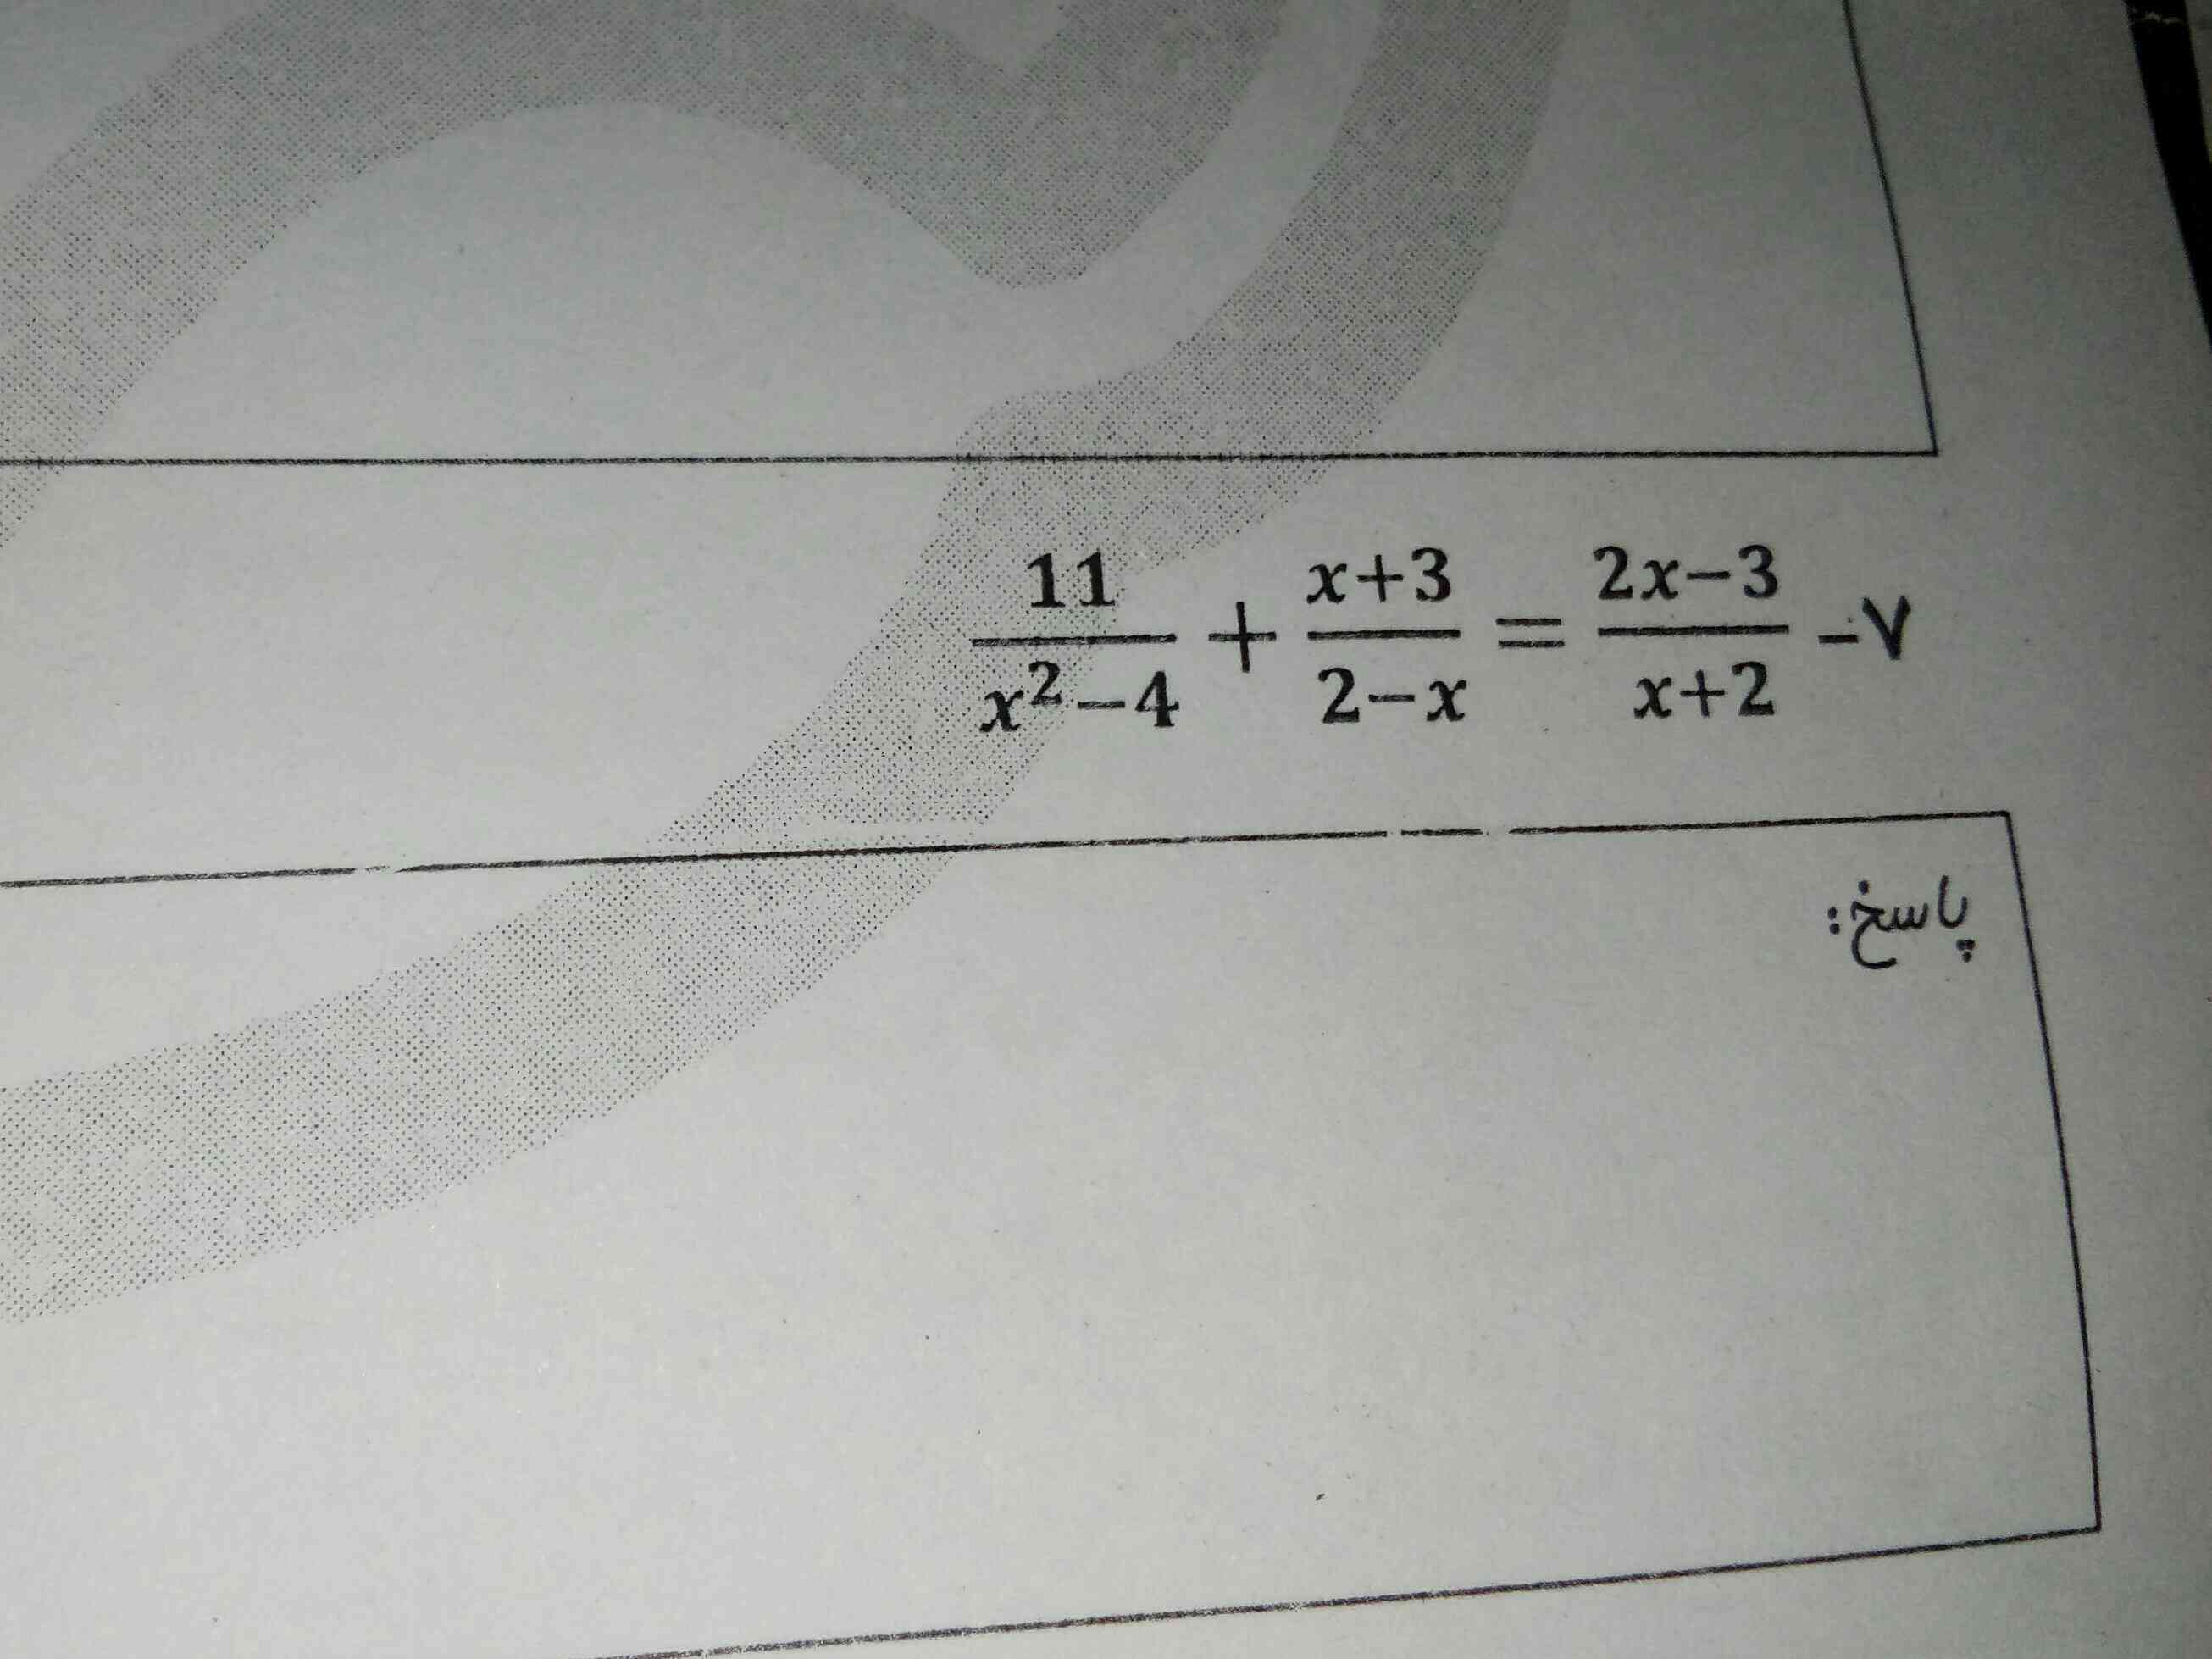 میشه لطفا جواب بدین ممنون
فصل ۲ ریاضی